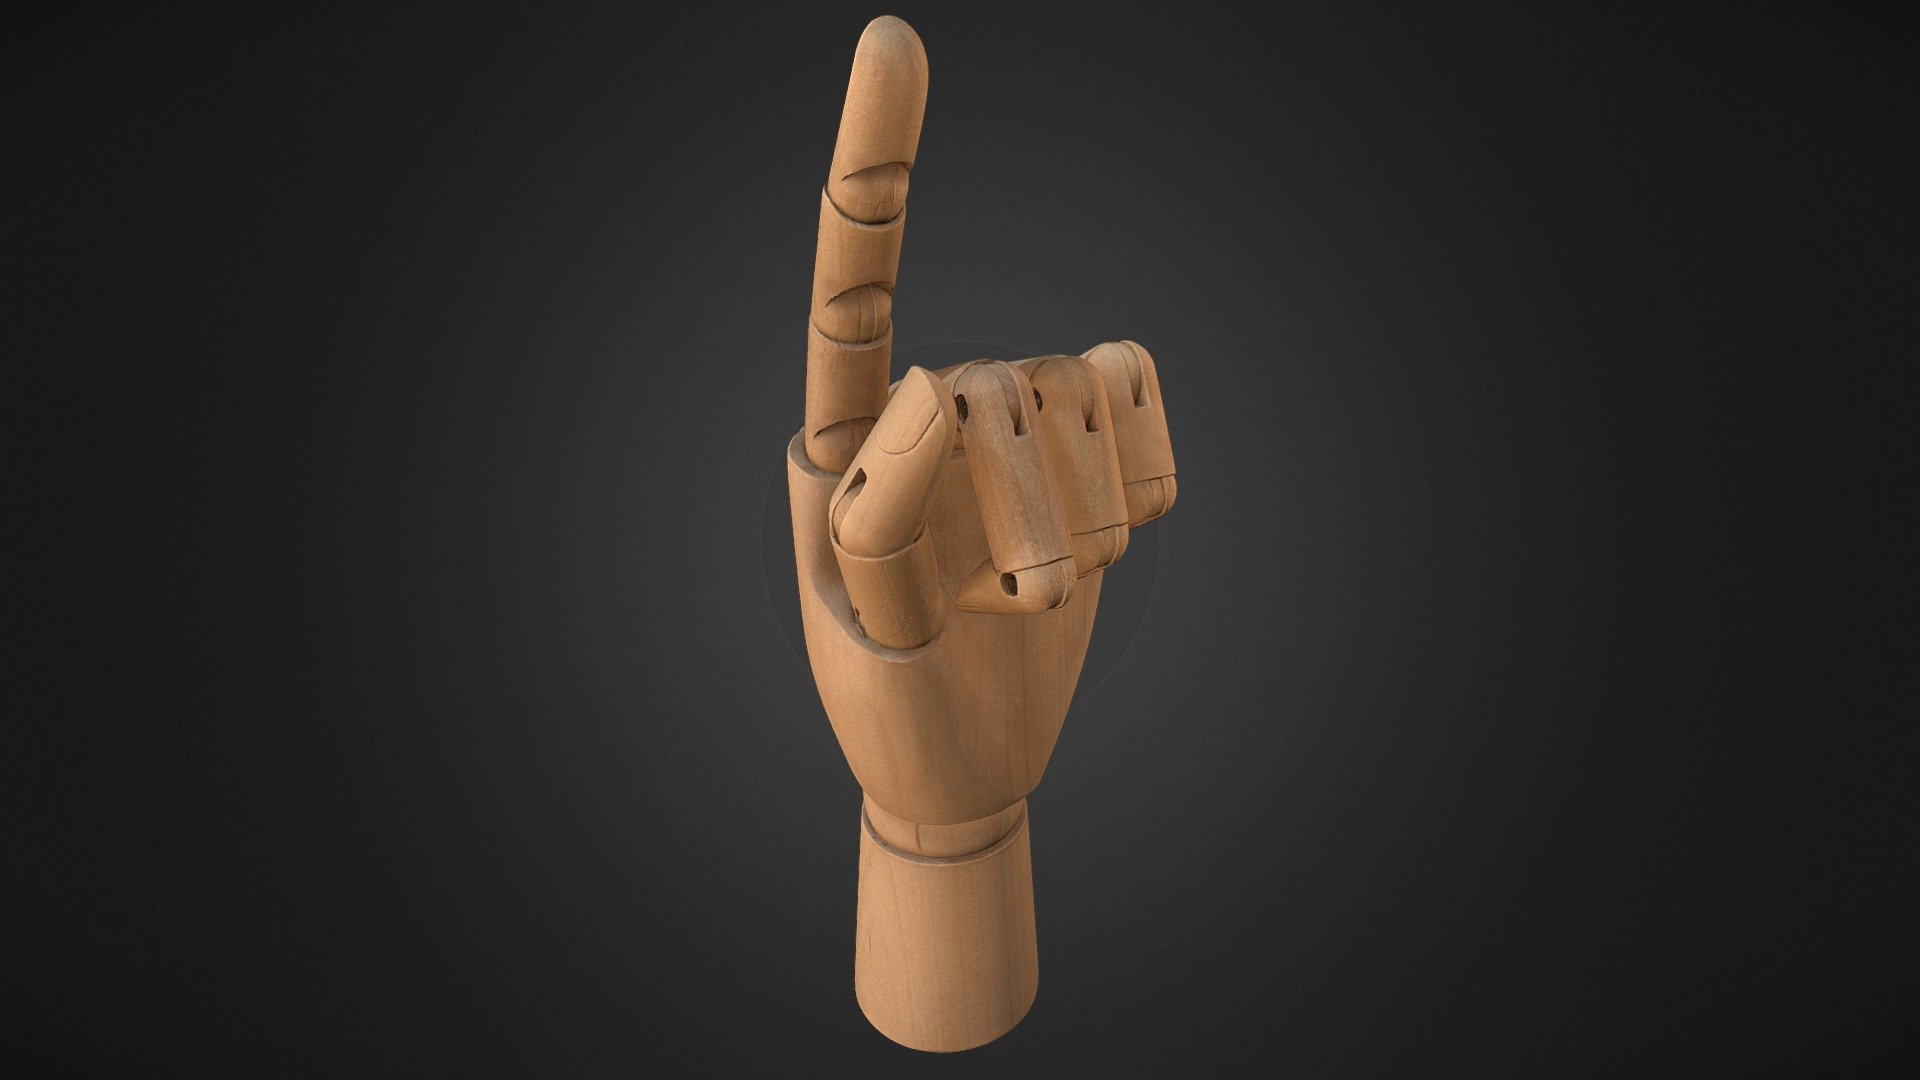 Wooden model hand